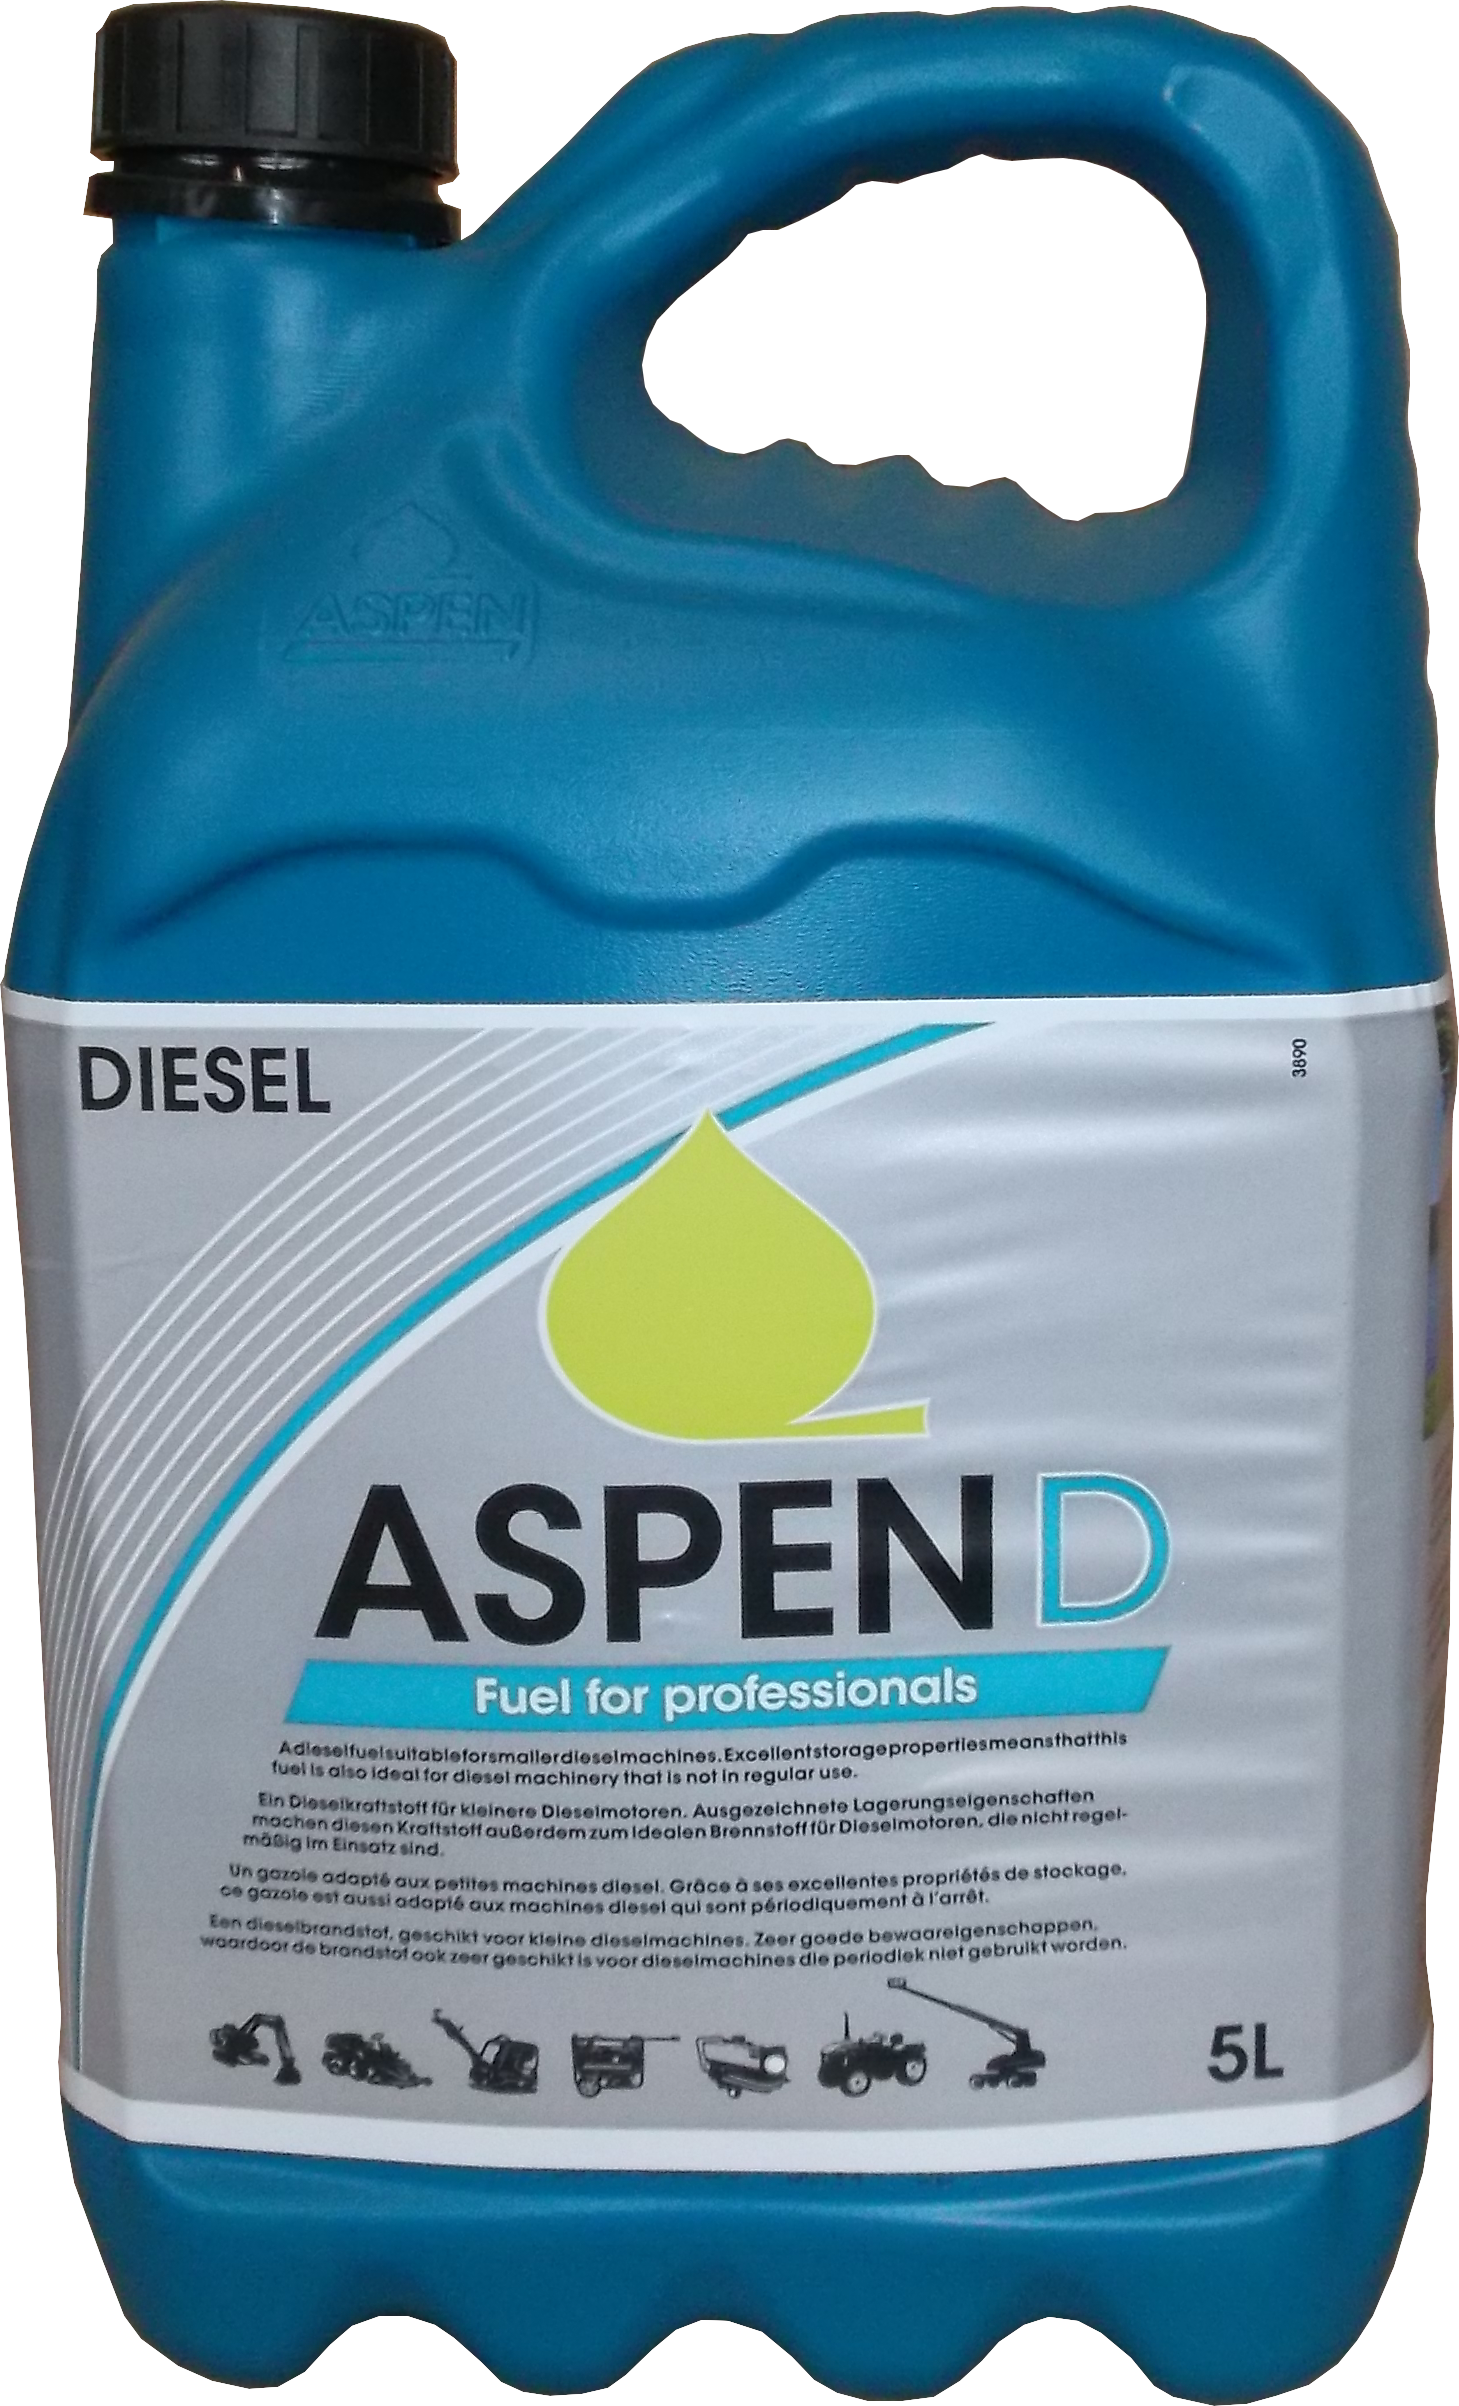 GRÜN 5L ASPEN Diesel bis -32° lange Lagerfähig, Öle, Benzin, Schmierstoffe, Weitere Angebote